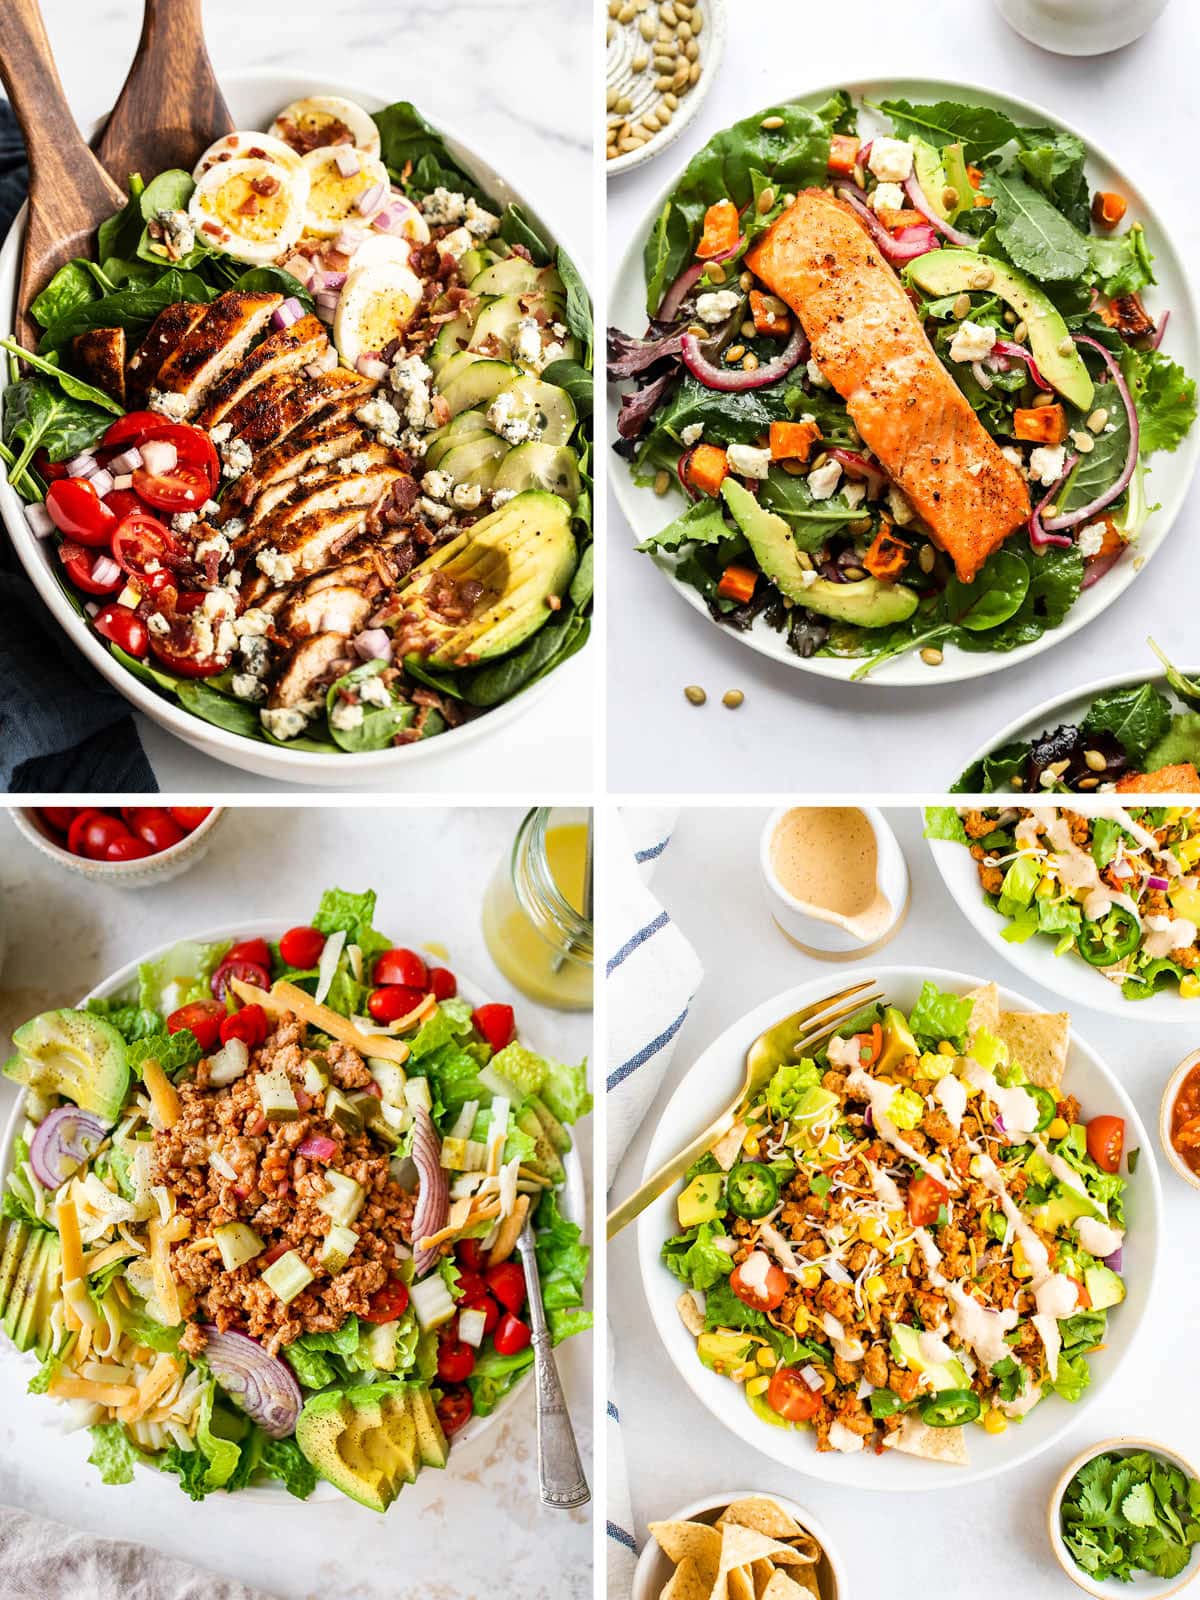 https://www.eatingbirdfood.com/wp-content/uploads/2022/05/Dinner-Salads-BLOG-IMAGE-min.jpg